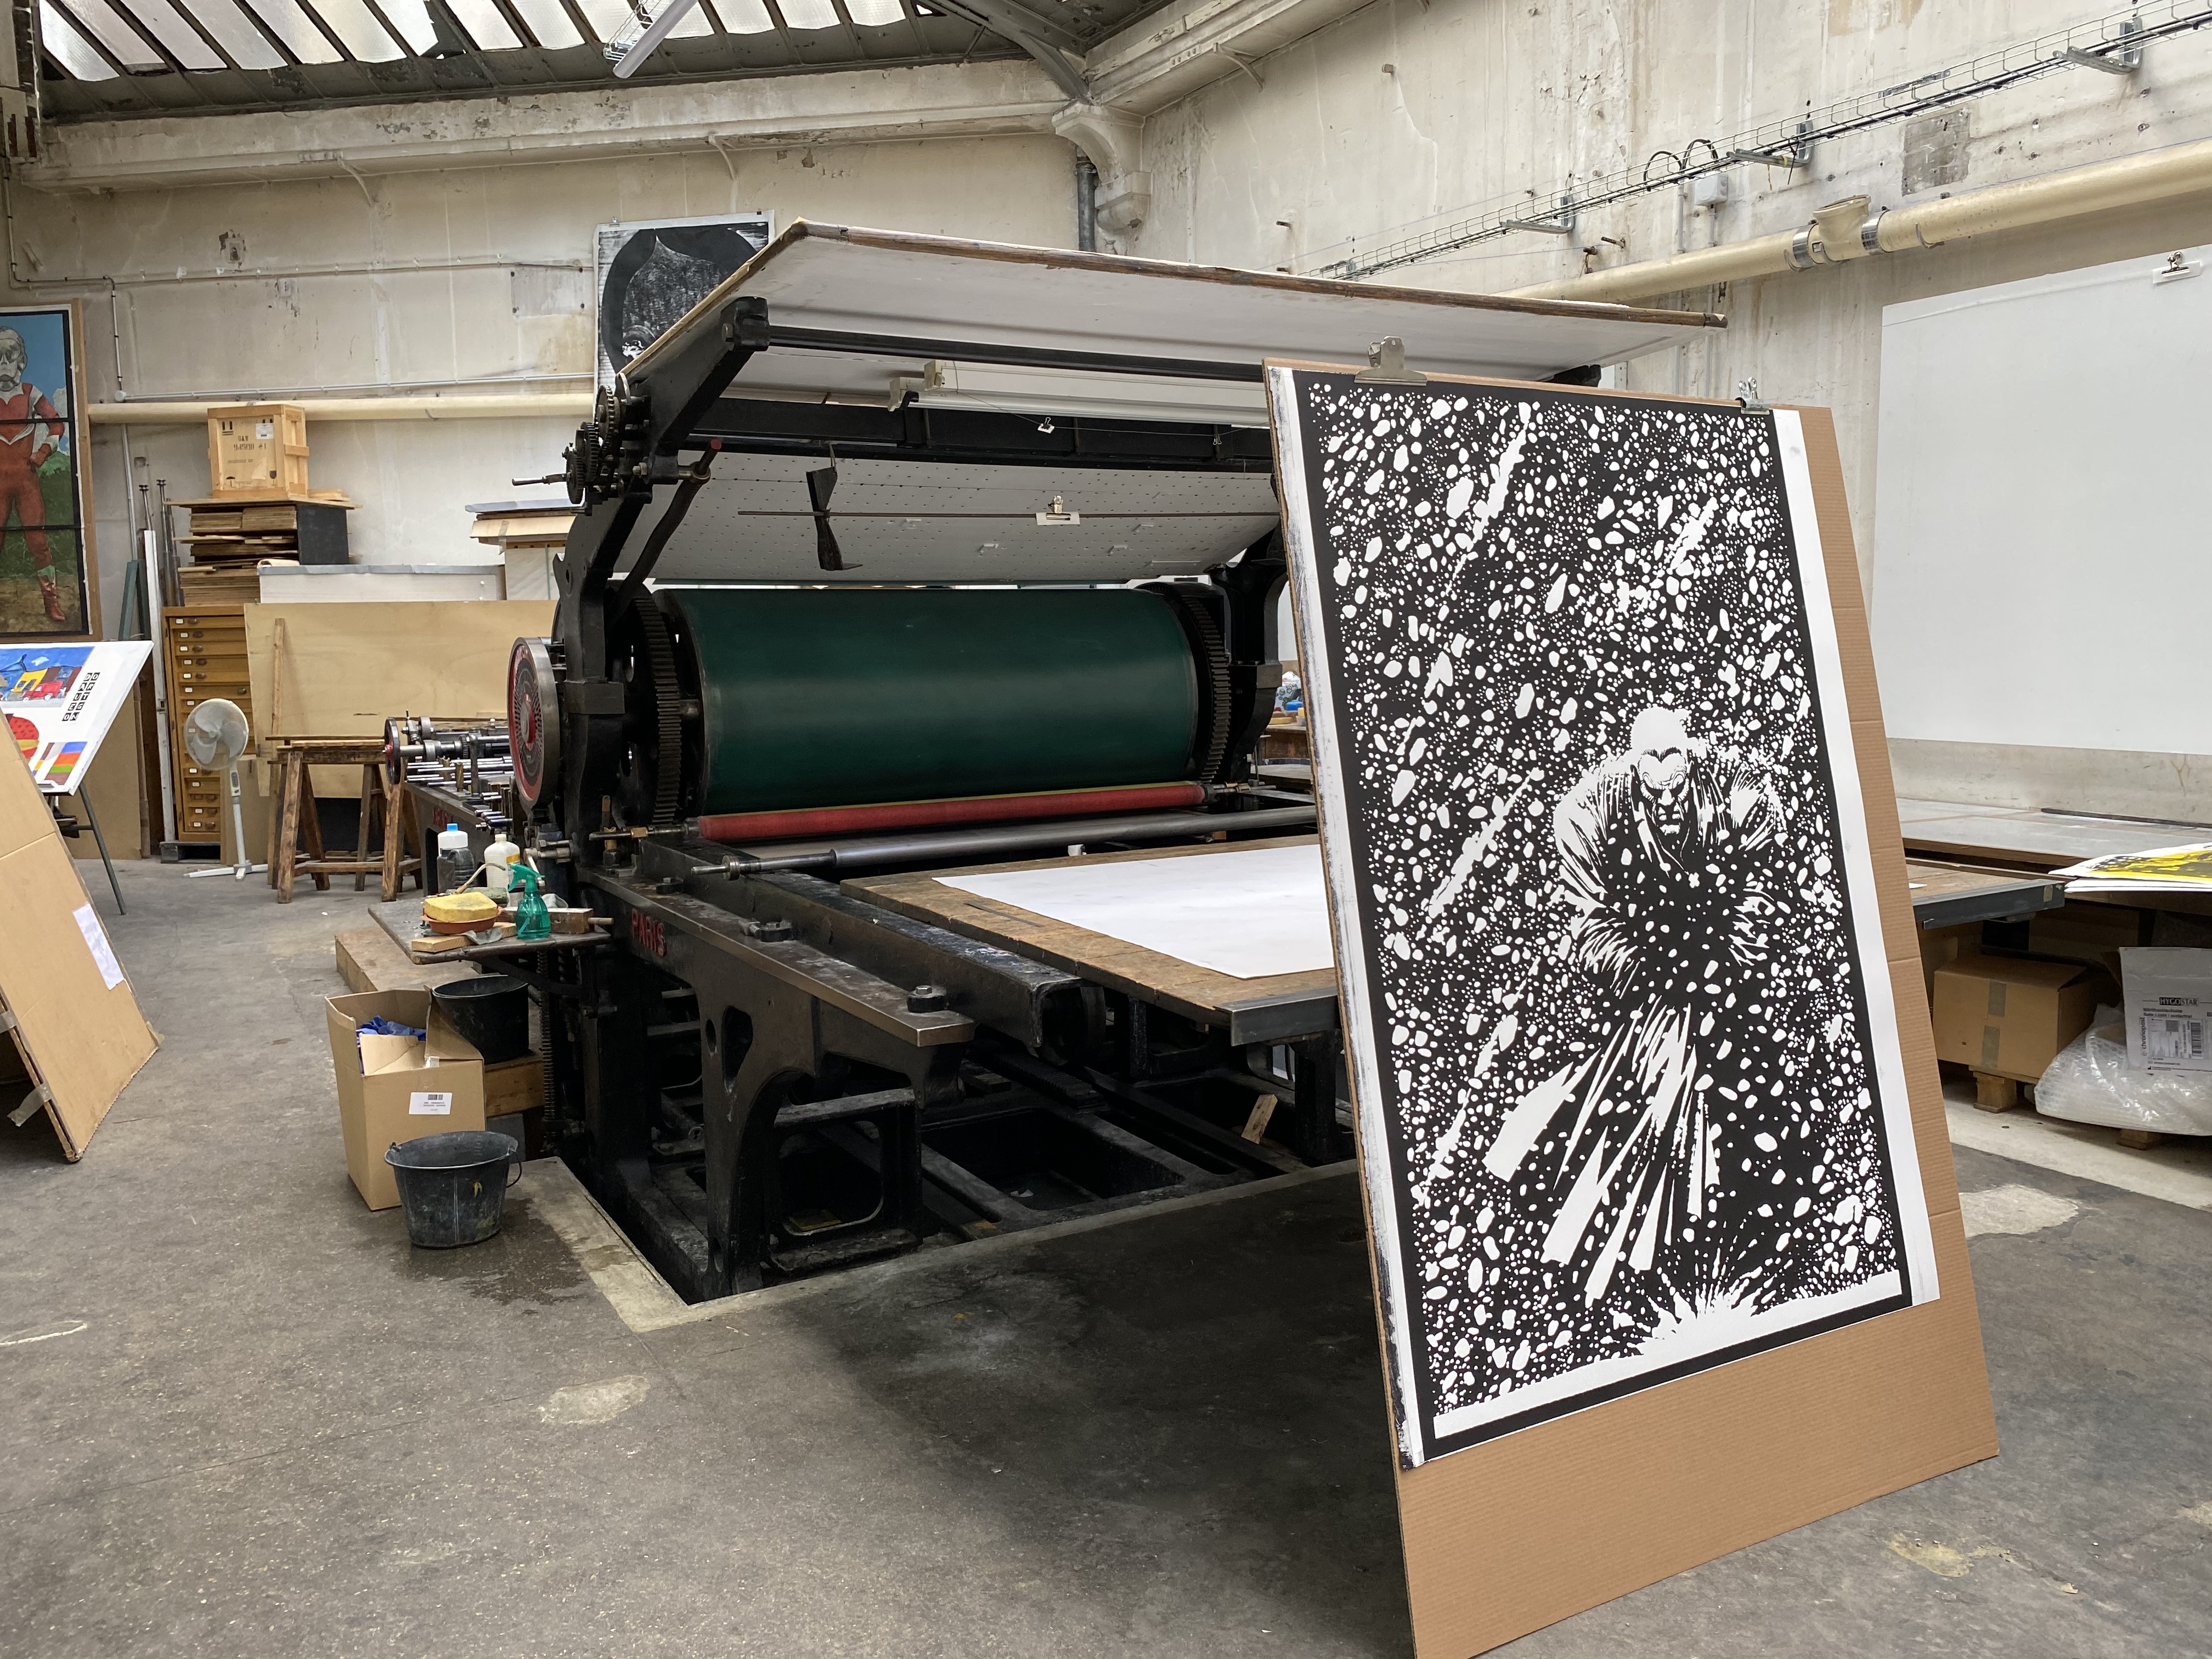 Frank MILLER - SIN CITY - MARV, 2022 -  Voici la grande presse lithographique qui a servi à l'impression de la lithographie. Elle date du tout début du XXe siècle. 